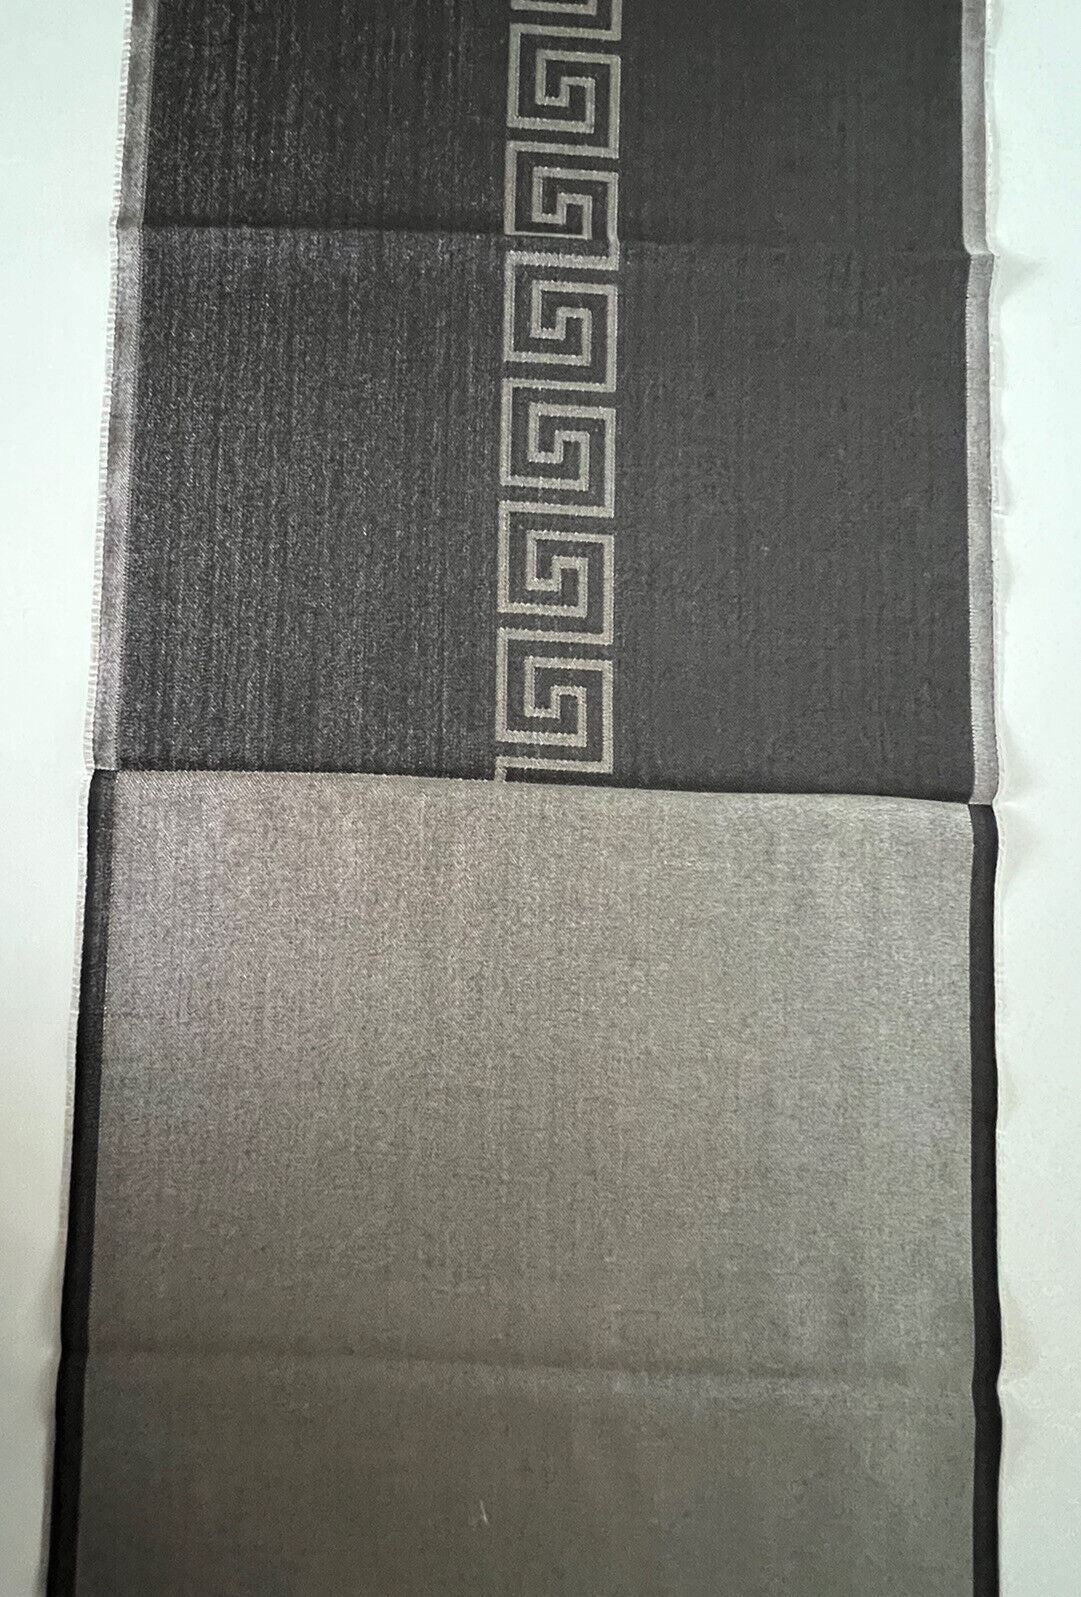 NWT 400 $ Versace Schal mit Medusa/Greek Key Logo aus Wolle und Seide in Schwarz/Grau, 14,5 B x 70 L 